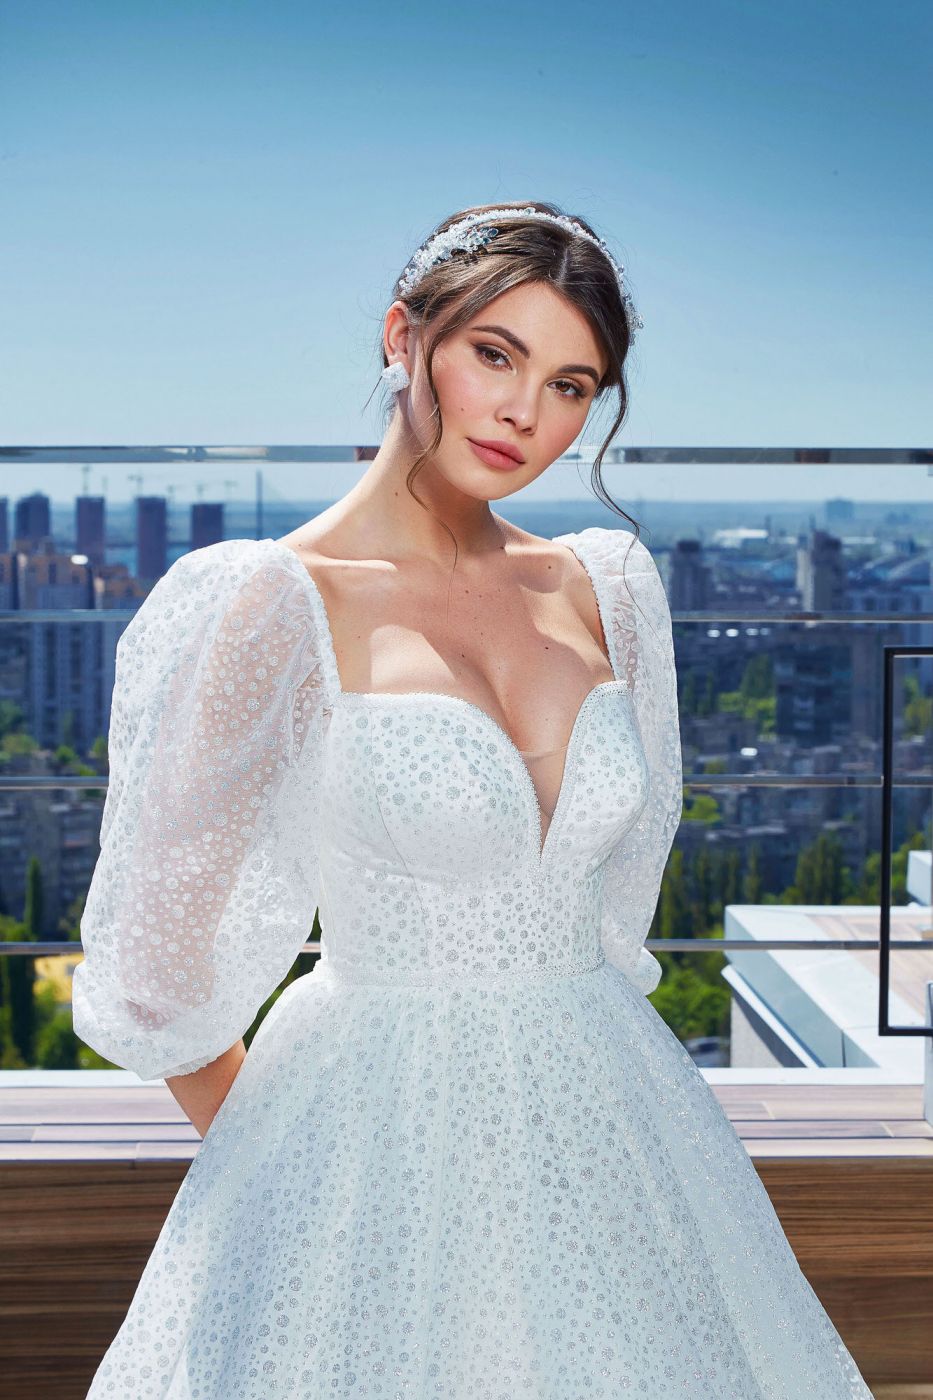 Пышное свадебное платье с рукавами и мерцающим серебристым узором Арт. 096